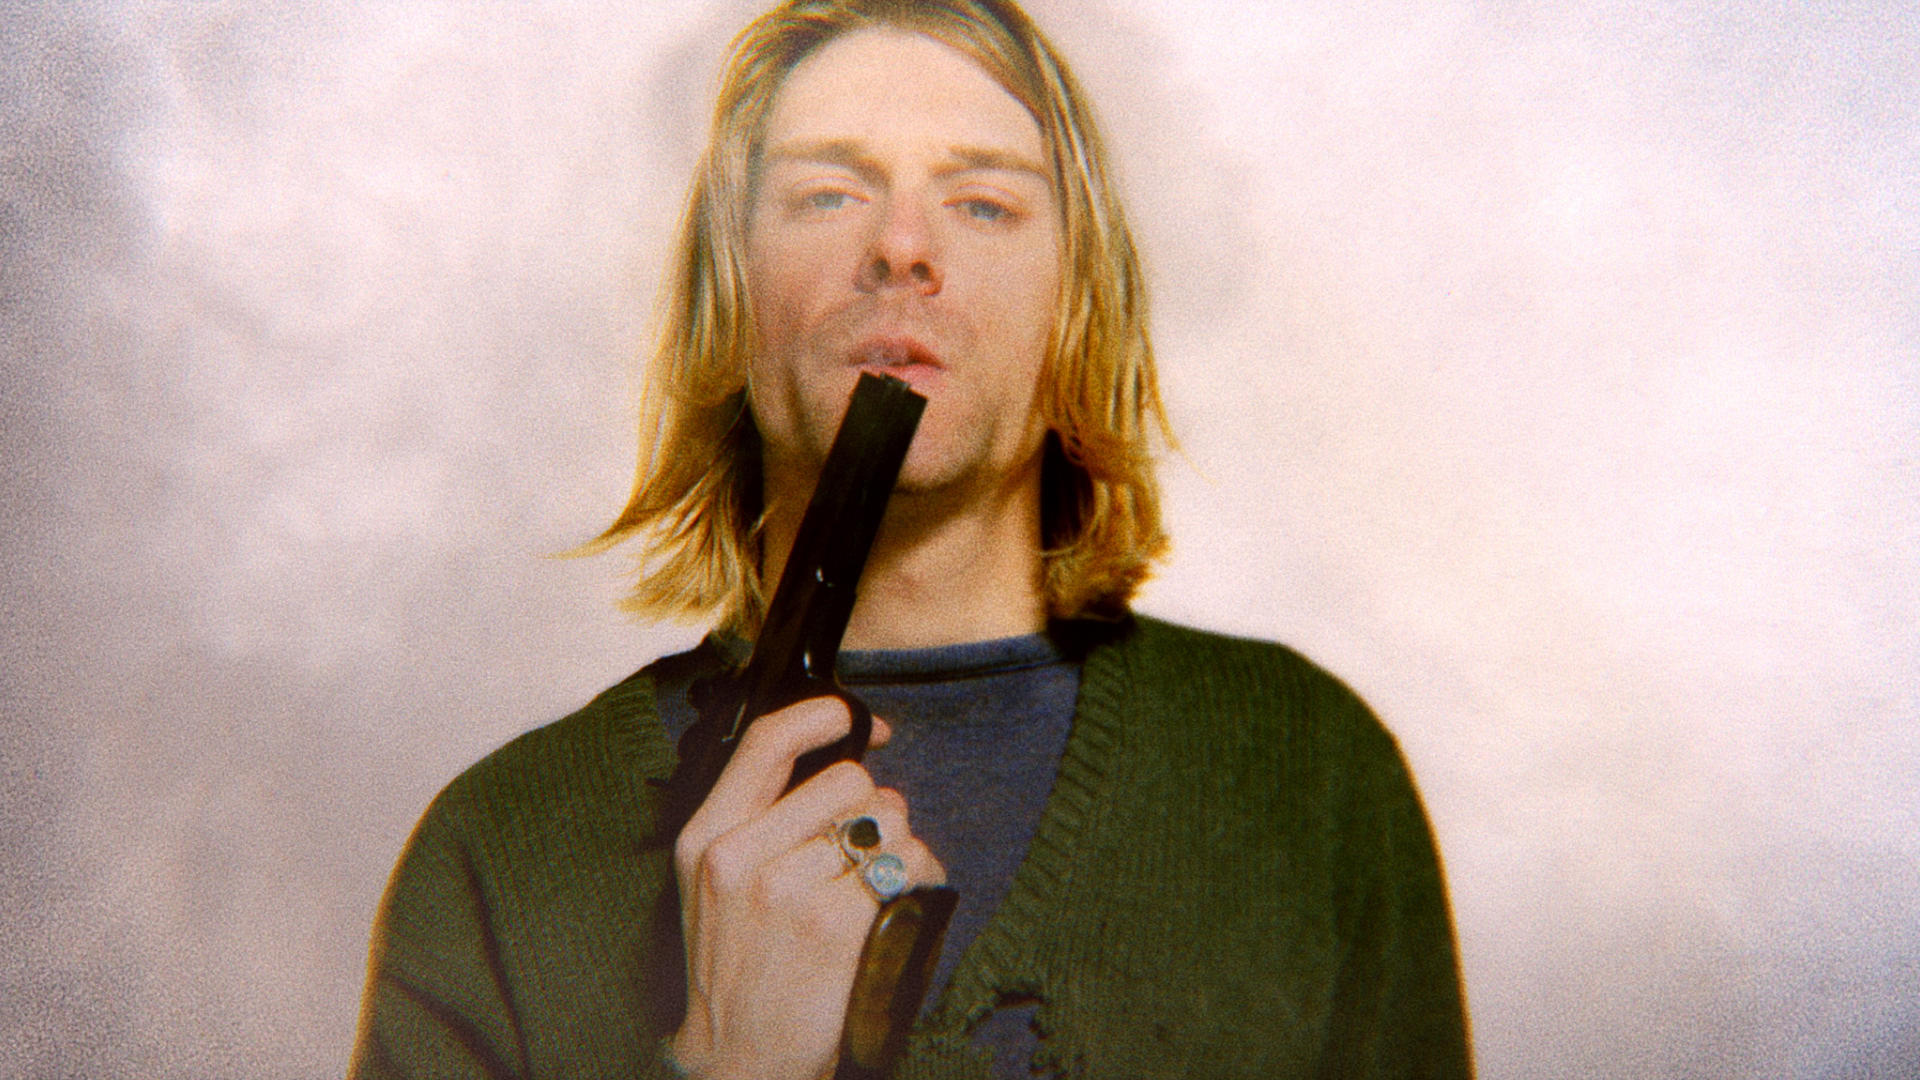 Aufnahme von Kurt Cobain in einer Szene des Kinofilms "Cobain: Montage of Heck"